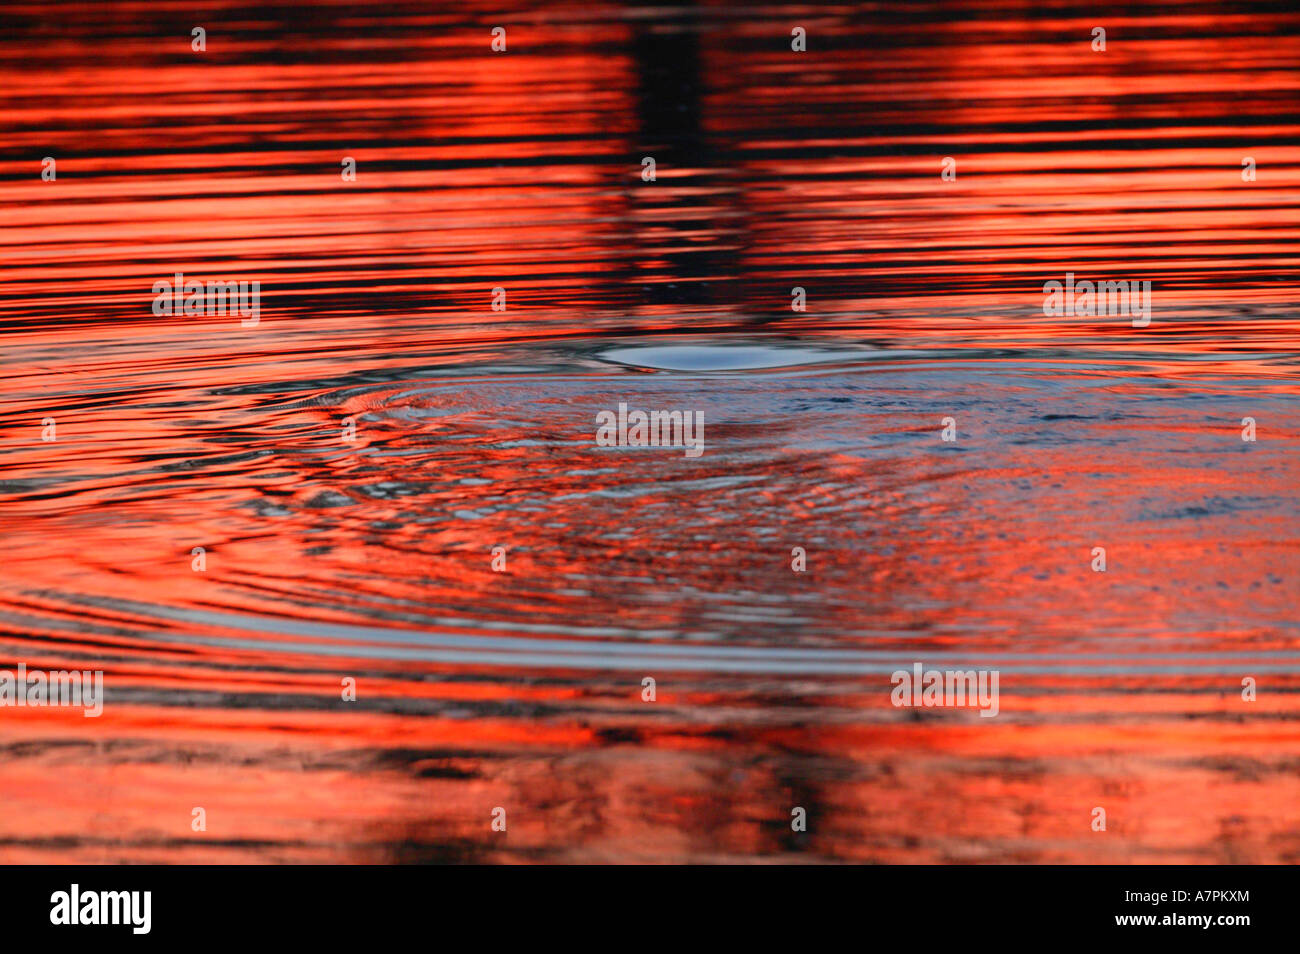 Crimson increspature causati da un ippopotamo sommergendo stesso in un fiume dopo il tramonto con il cielo rosso cremisi riflessi nell'acqua Foto Stock